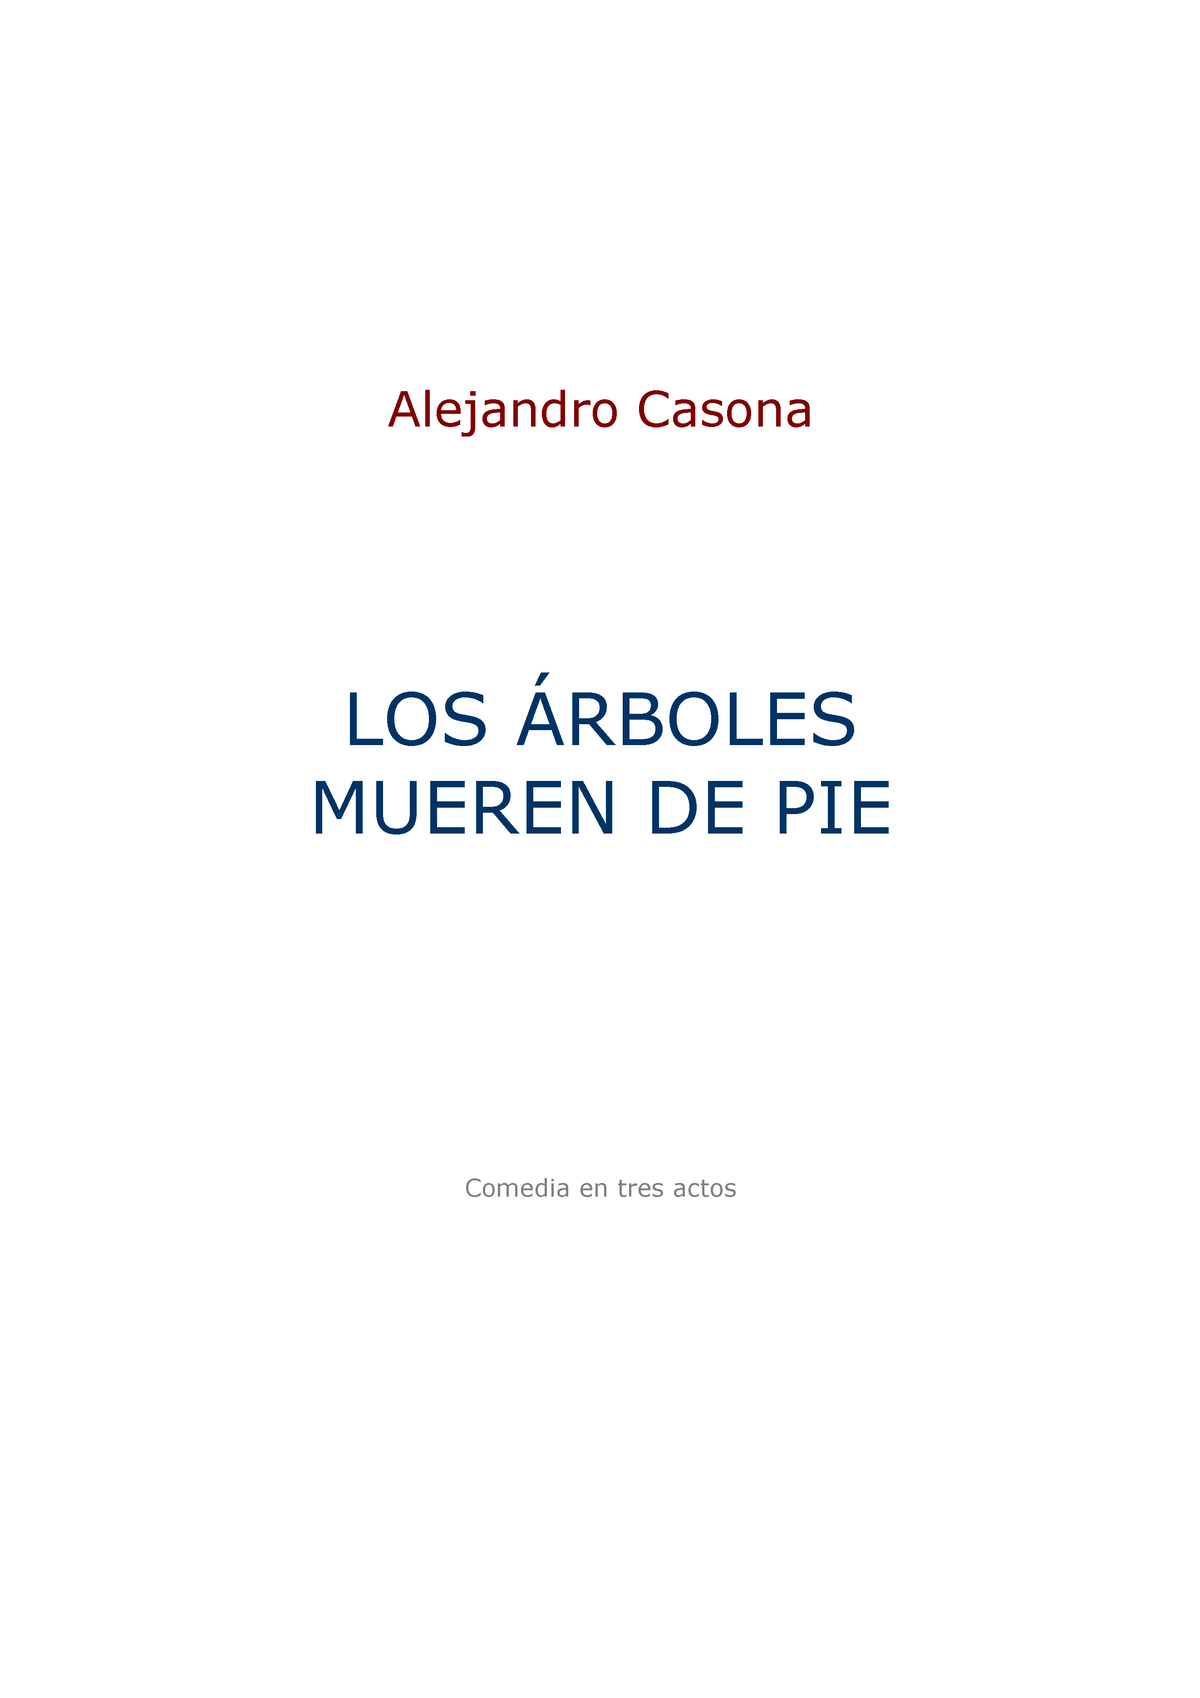 Los arboles mueren de pie - Alejandro Casona LOS ÁRBOLES MUEREN DE PIE  Comedia en tres actos Esta - Studocu